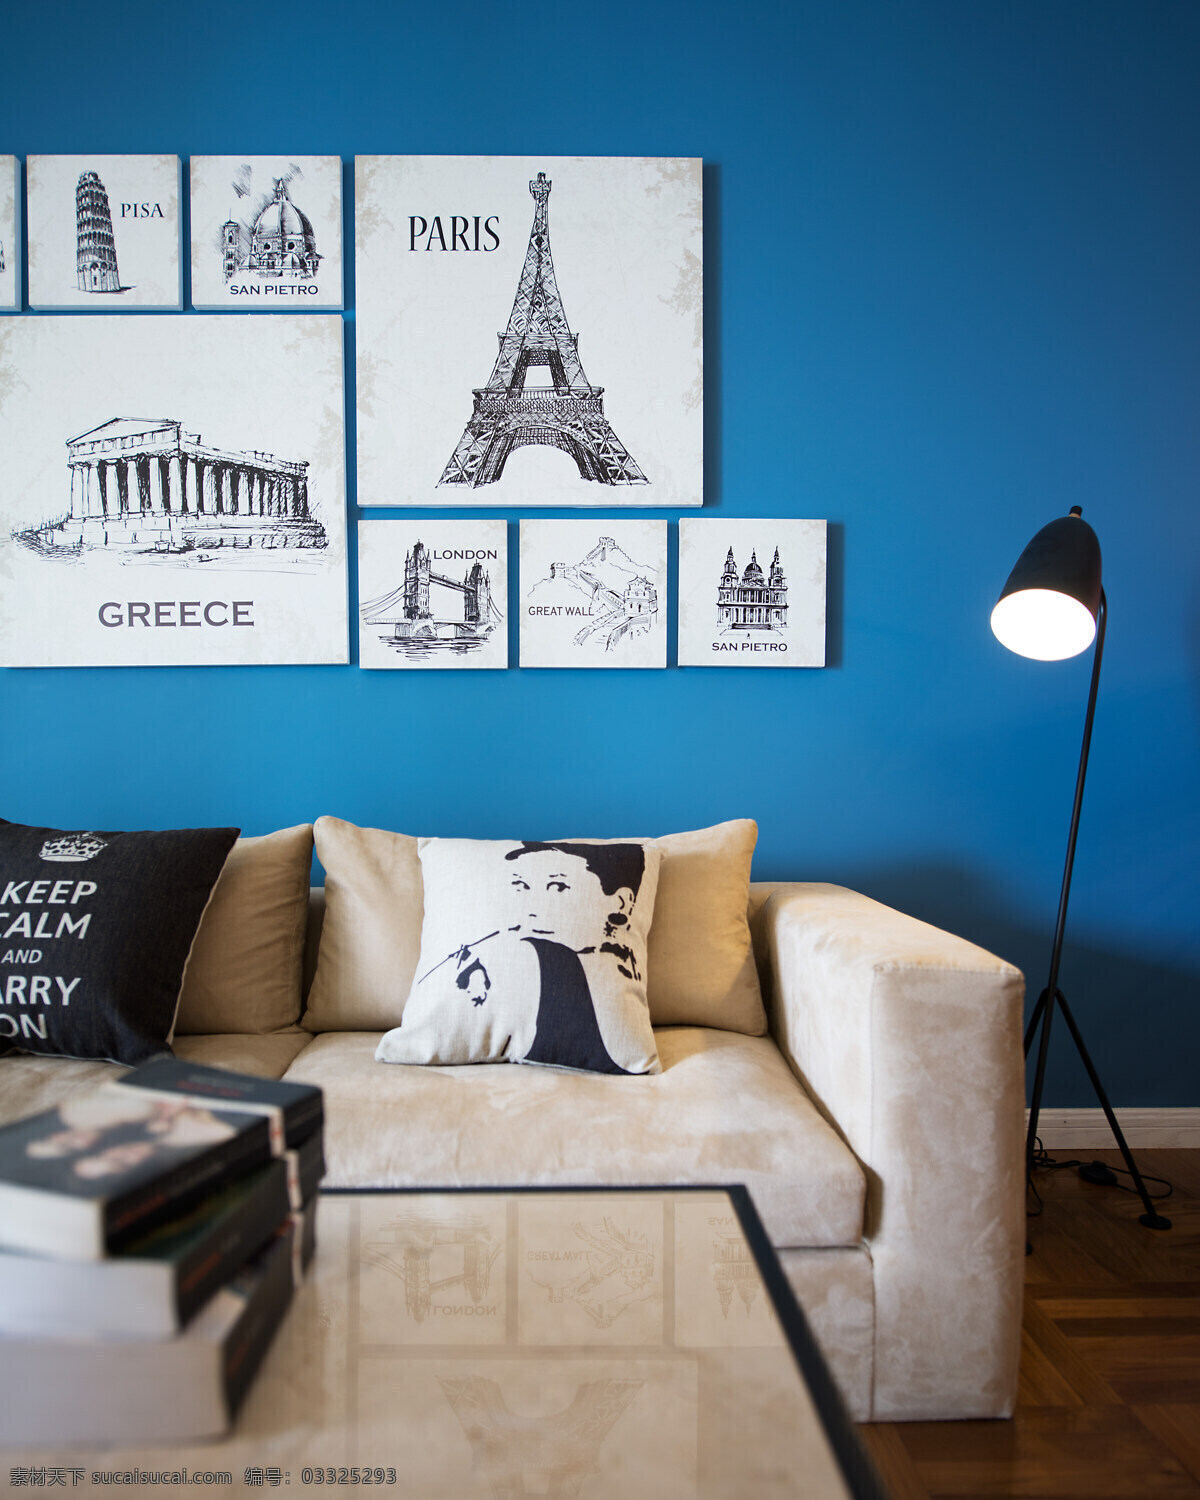 田园 风格 客厅 照片 墙 室内装修 效果图 布艺沙发 客厅装修 木地板 蓝色背景墙